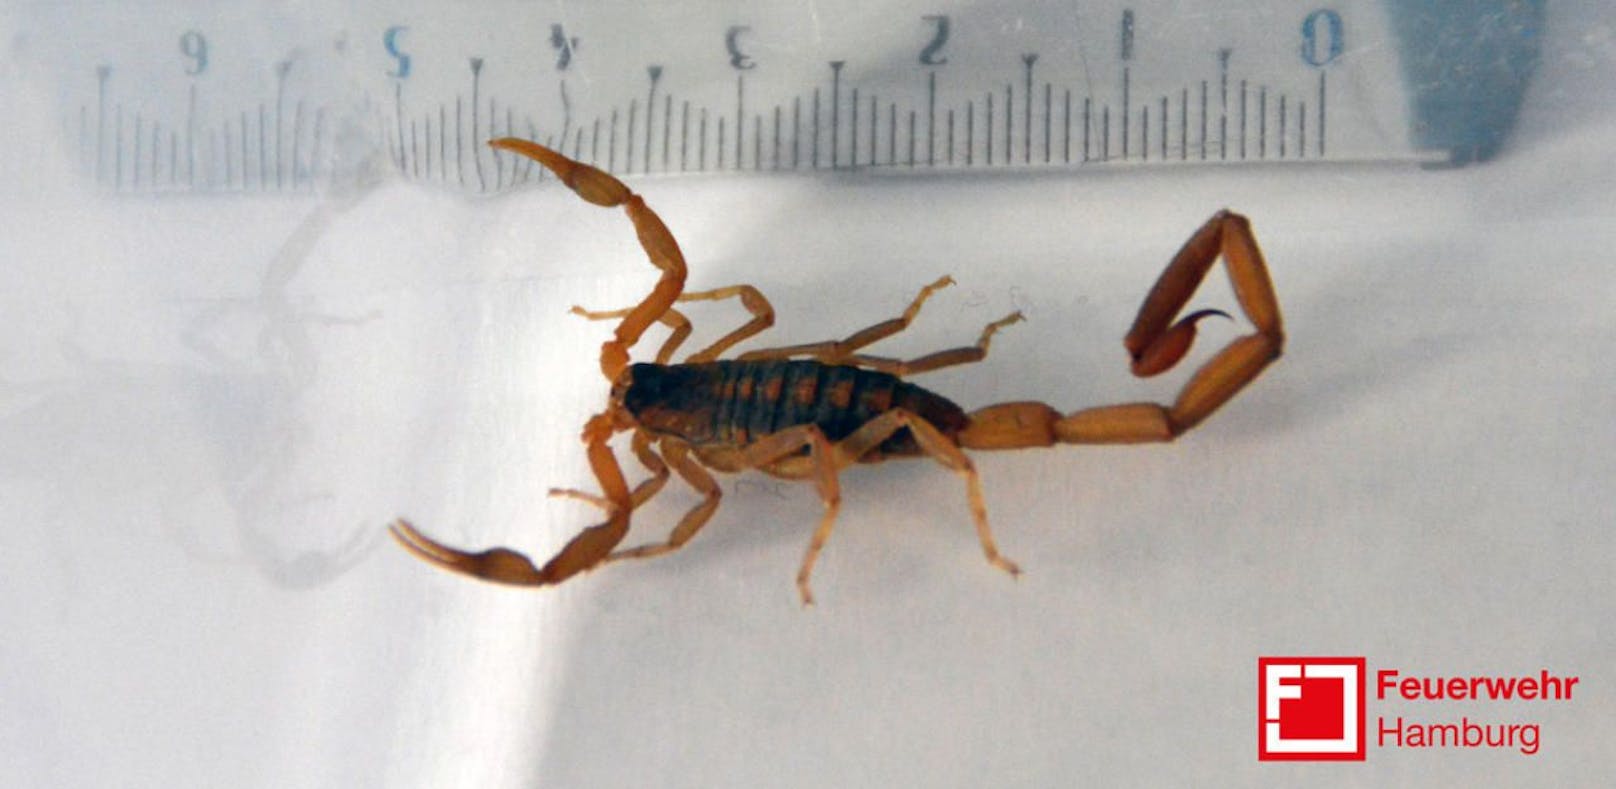 Der hochgiftige Skorpion hatte sich in einem Turnschuh der 23-Jährigen versteckt.